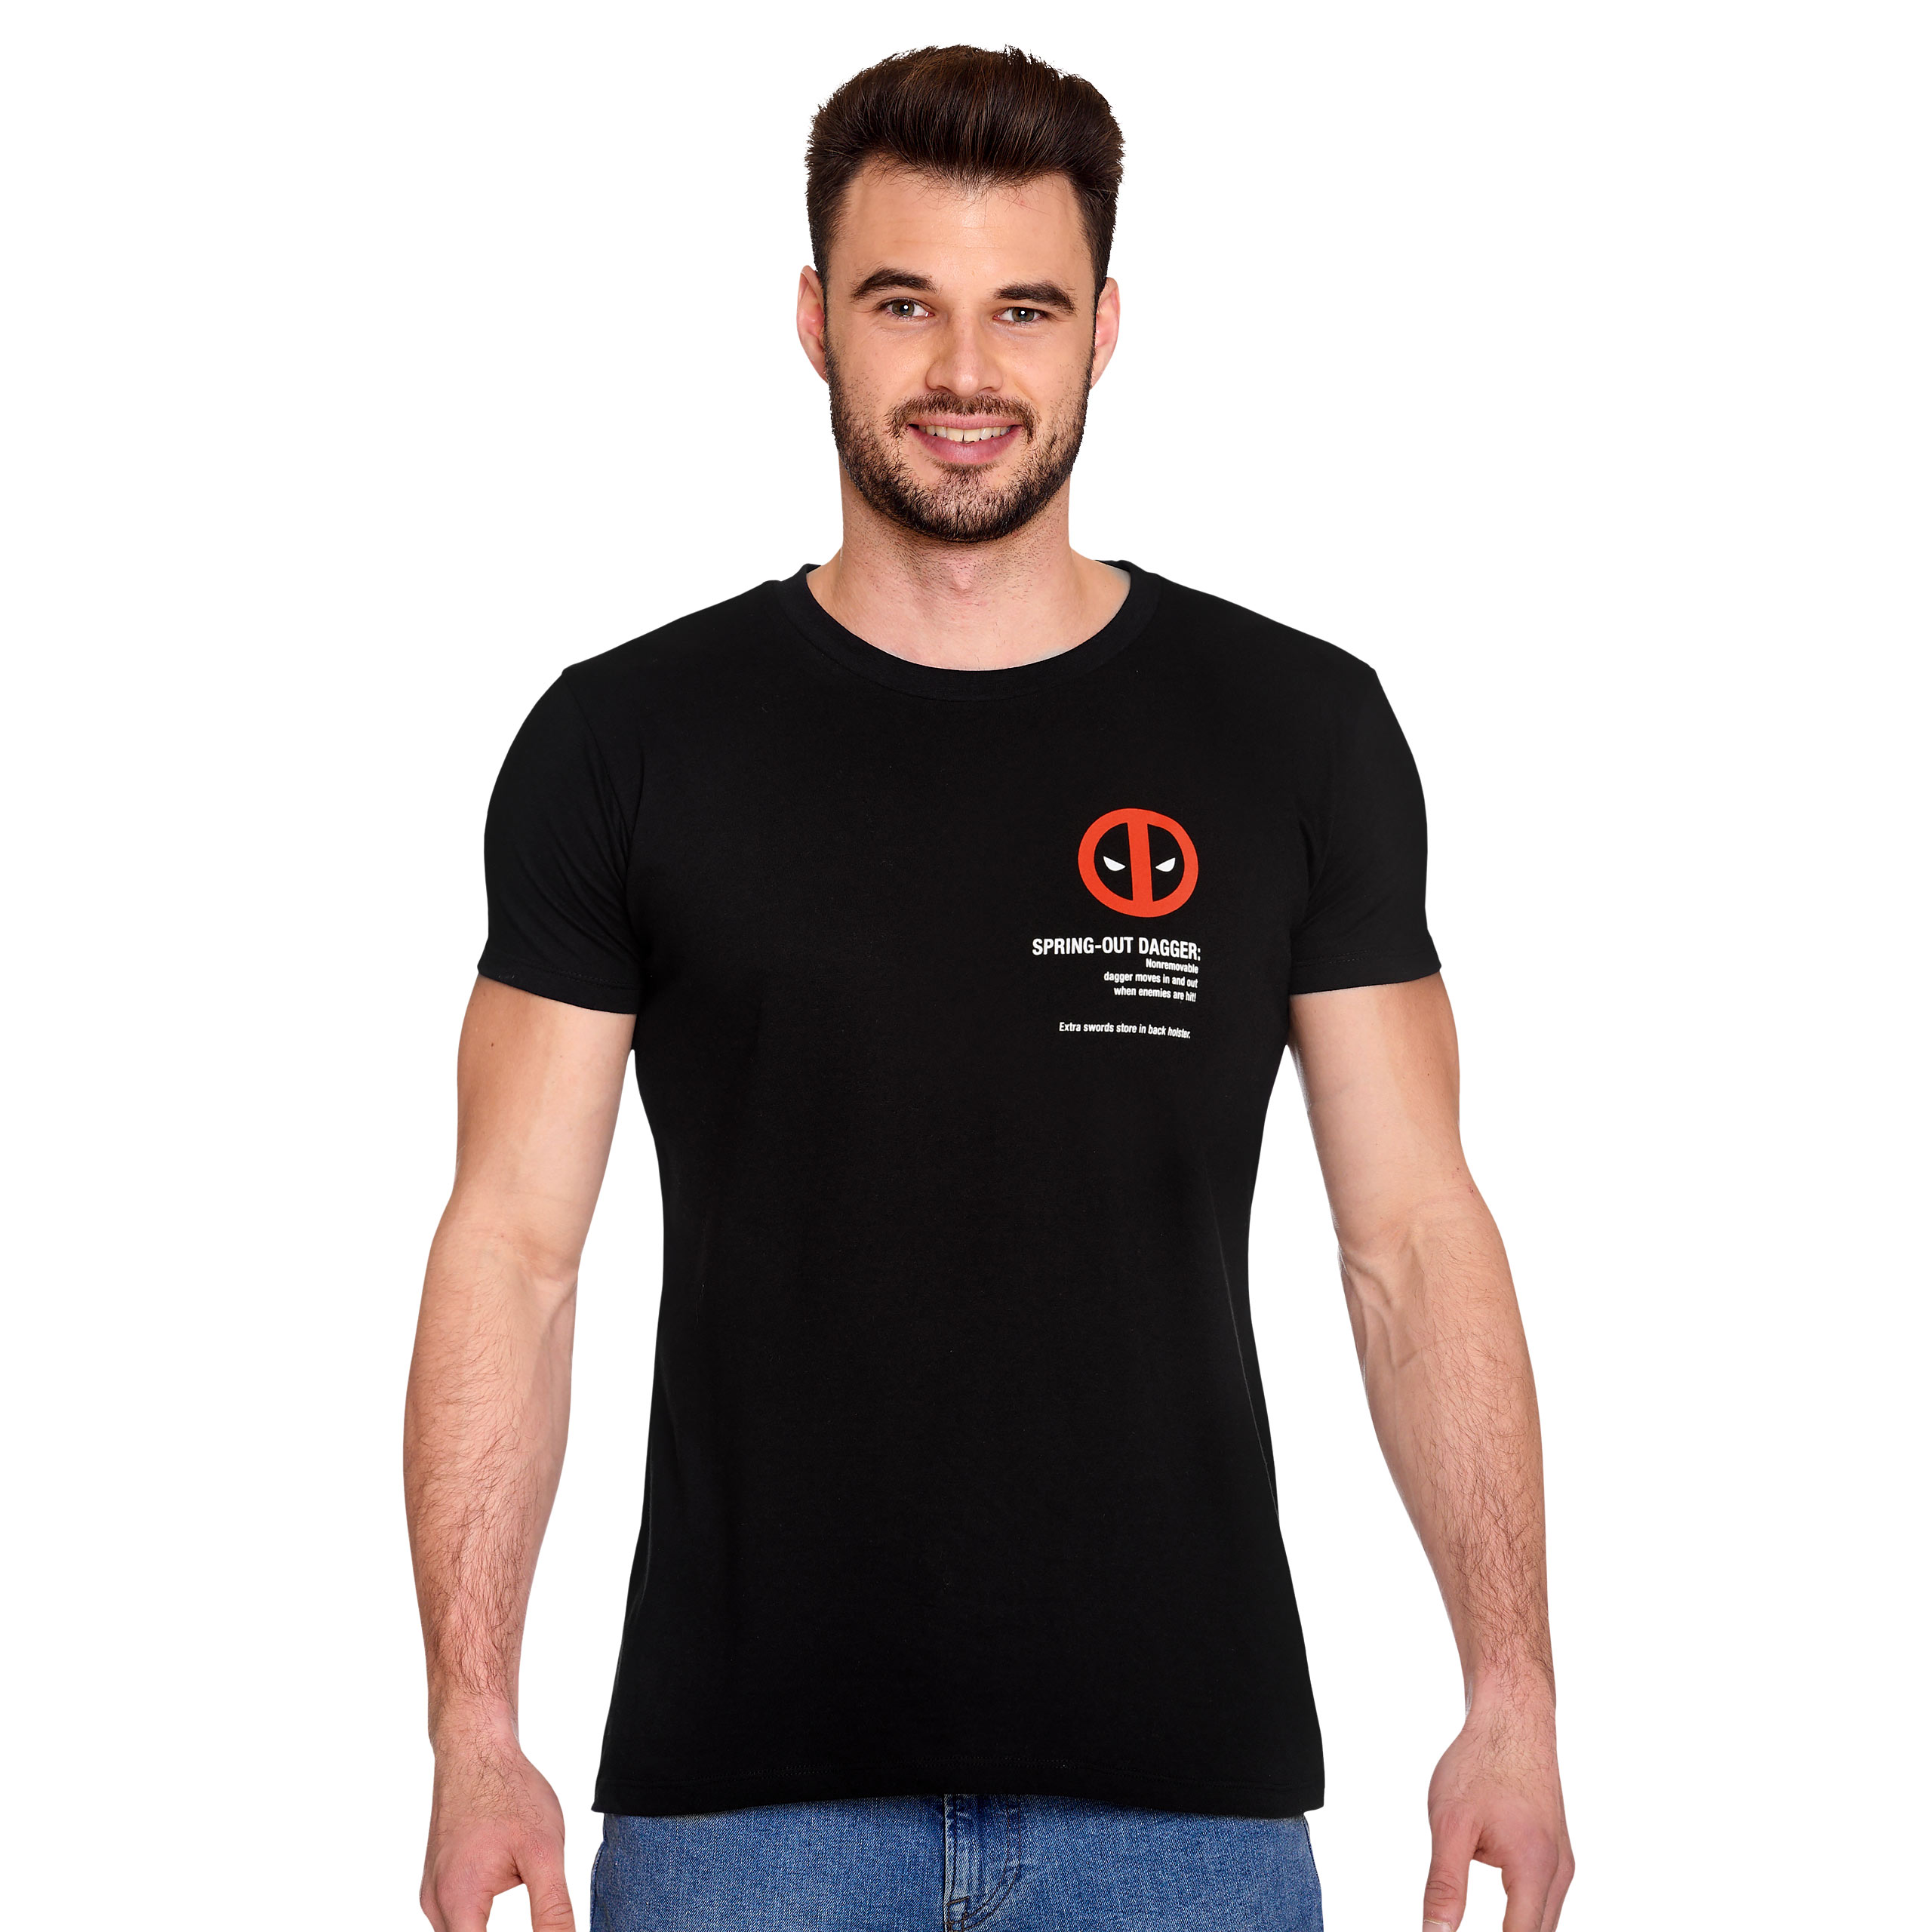 Deadpool - Wanted T-Shirt schwarz